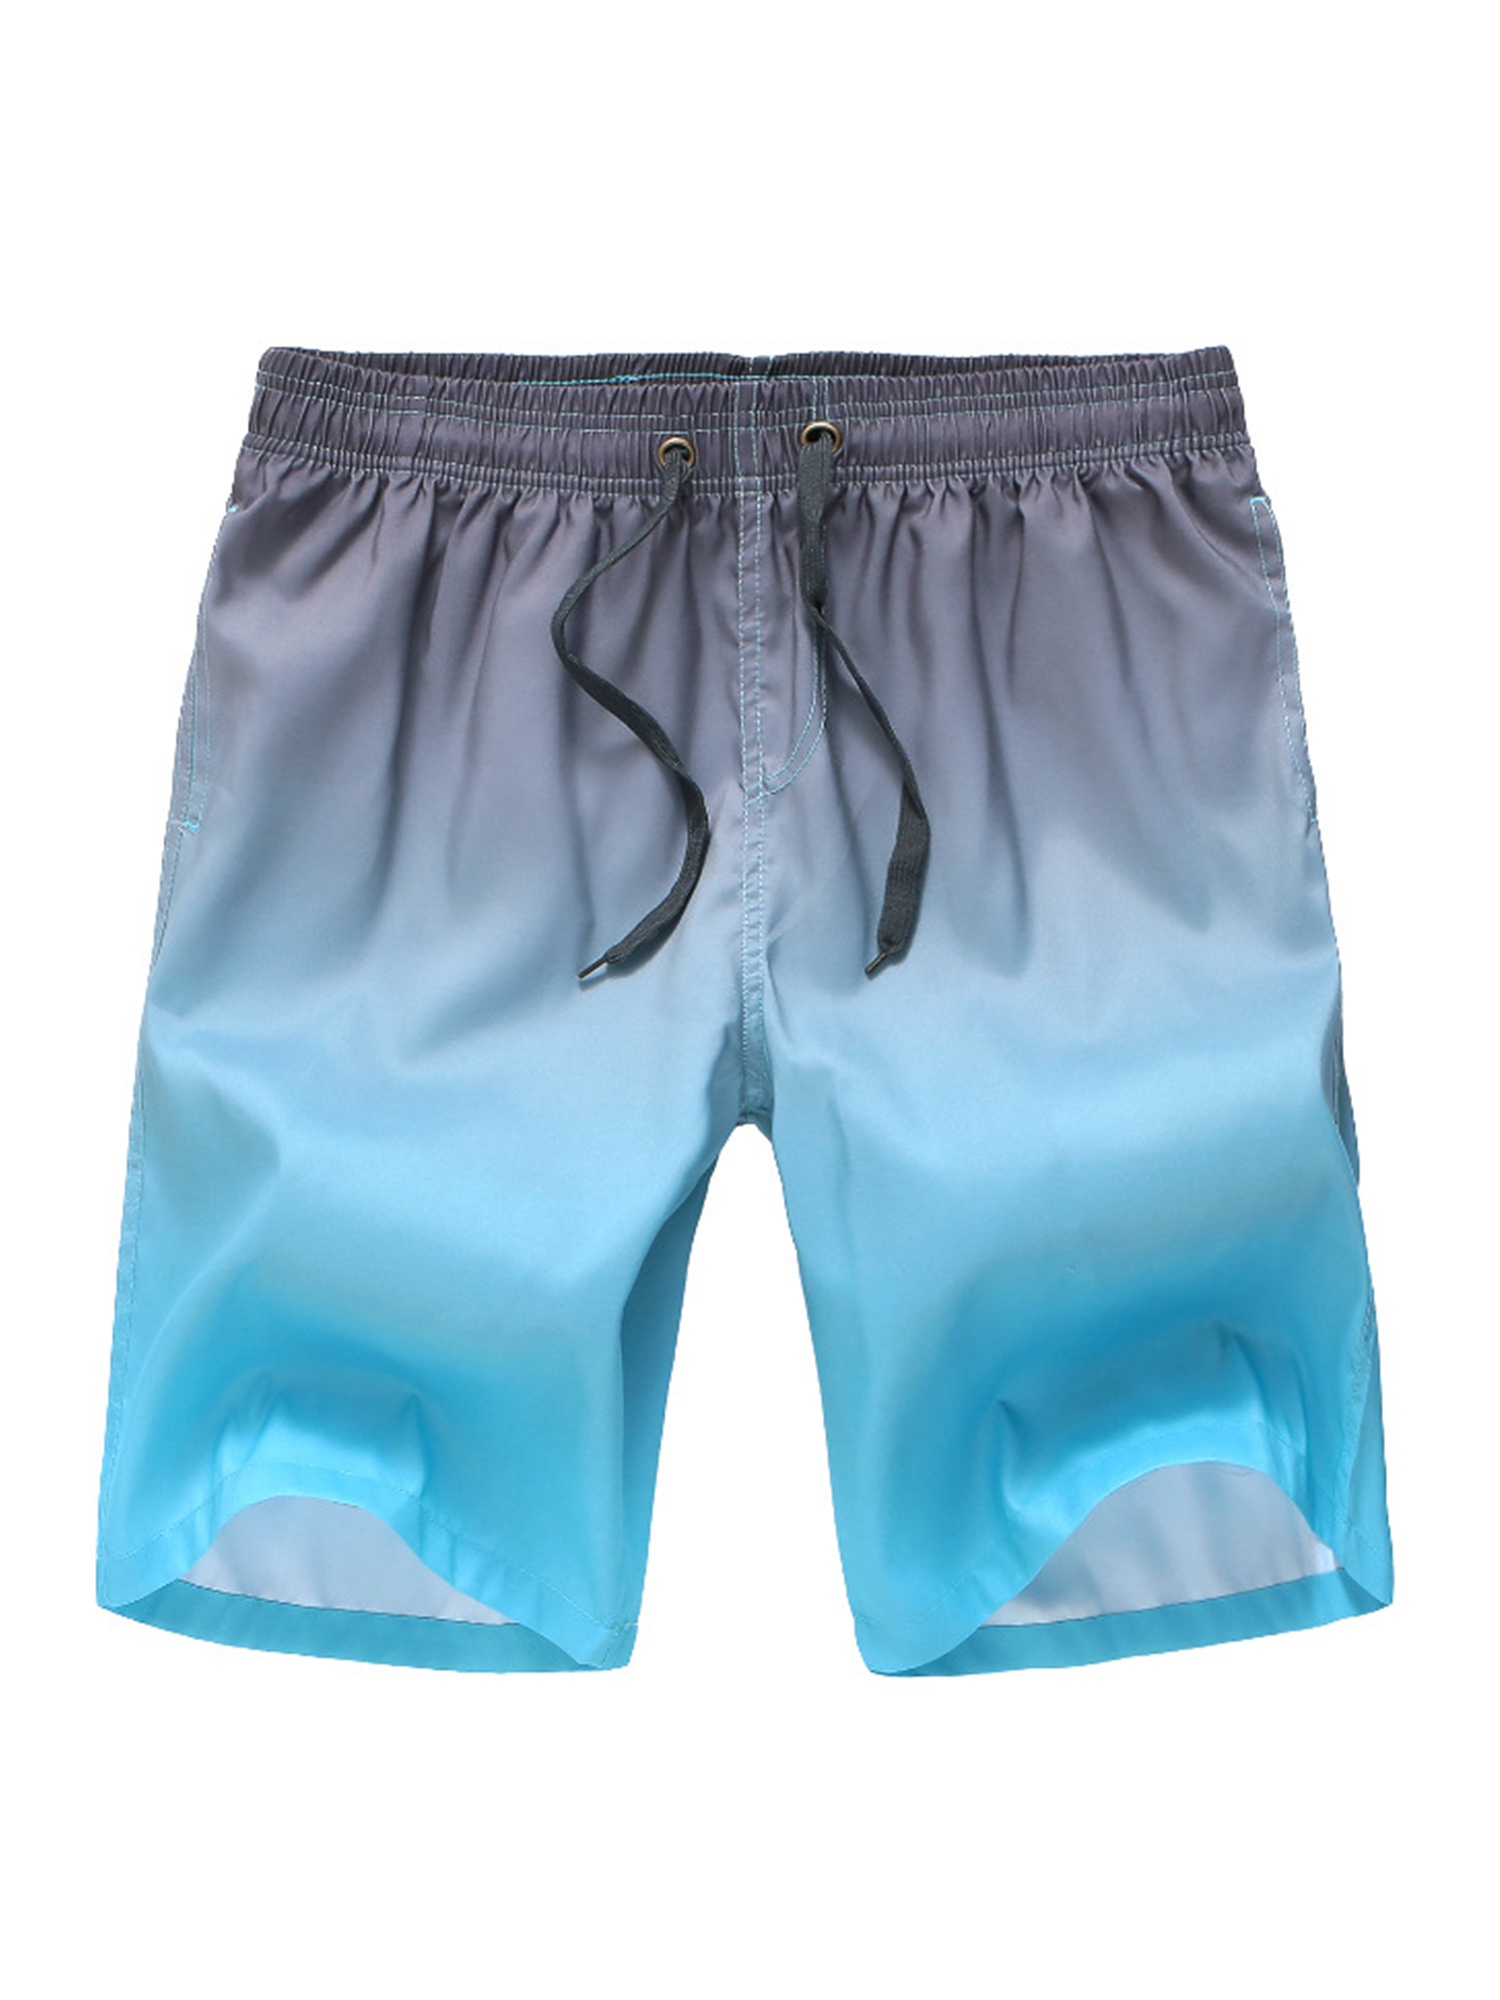 WUAI-Men Shorts Big and Tall Casual Drawstring Elastic Waist Workout Shorts Fashion Summer Beach Shorts with Pockets